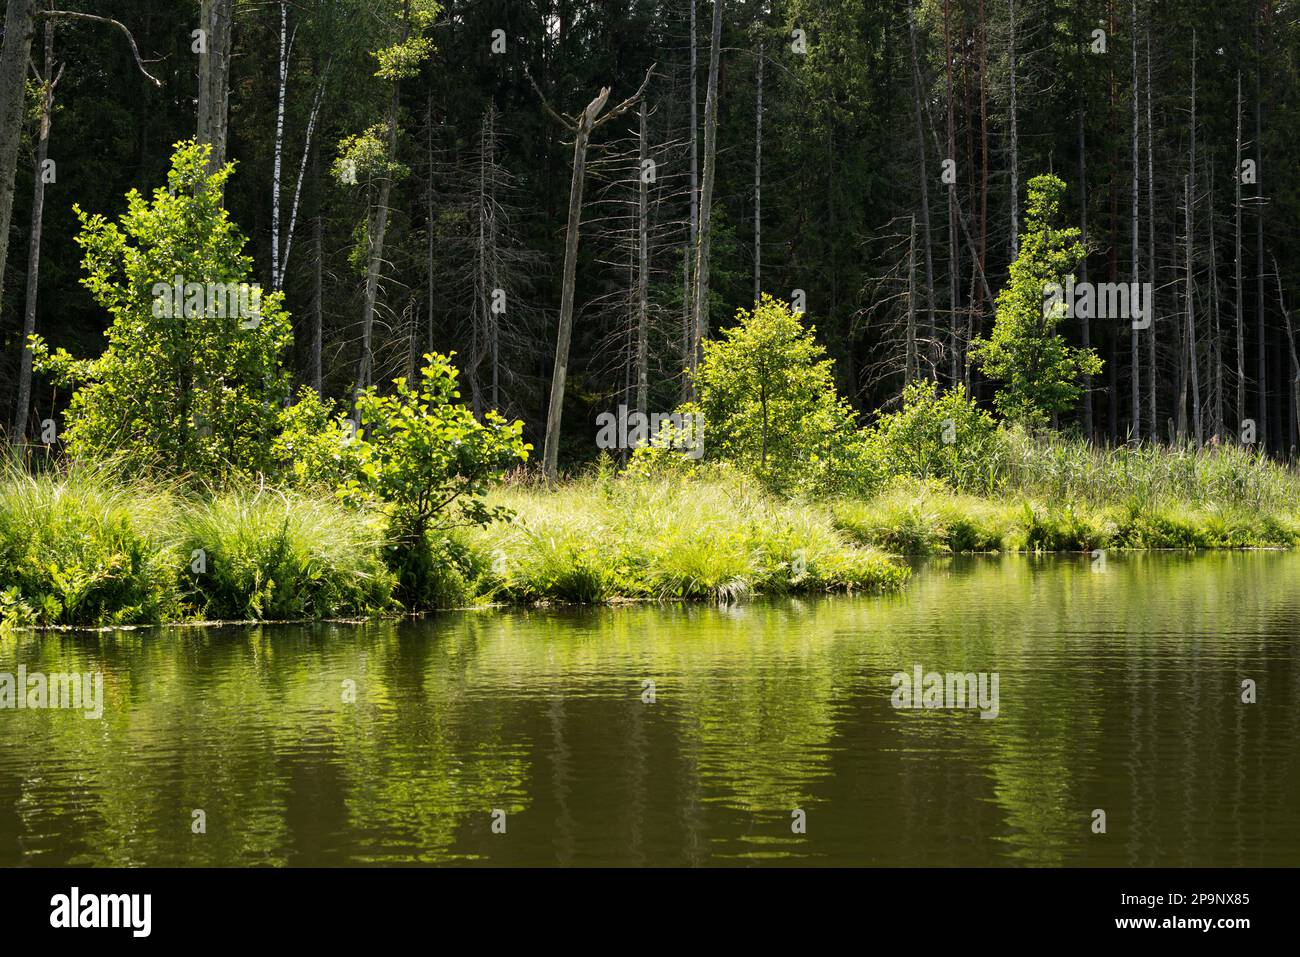 Ein kleiner See in einem Fichtenwald, der am Ufer von Baumstämmen mit getrockneten Bäumen umgeben ist. Stockfoto